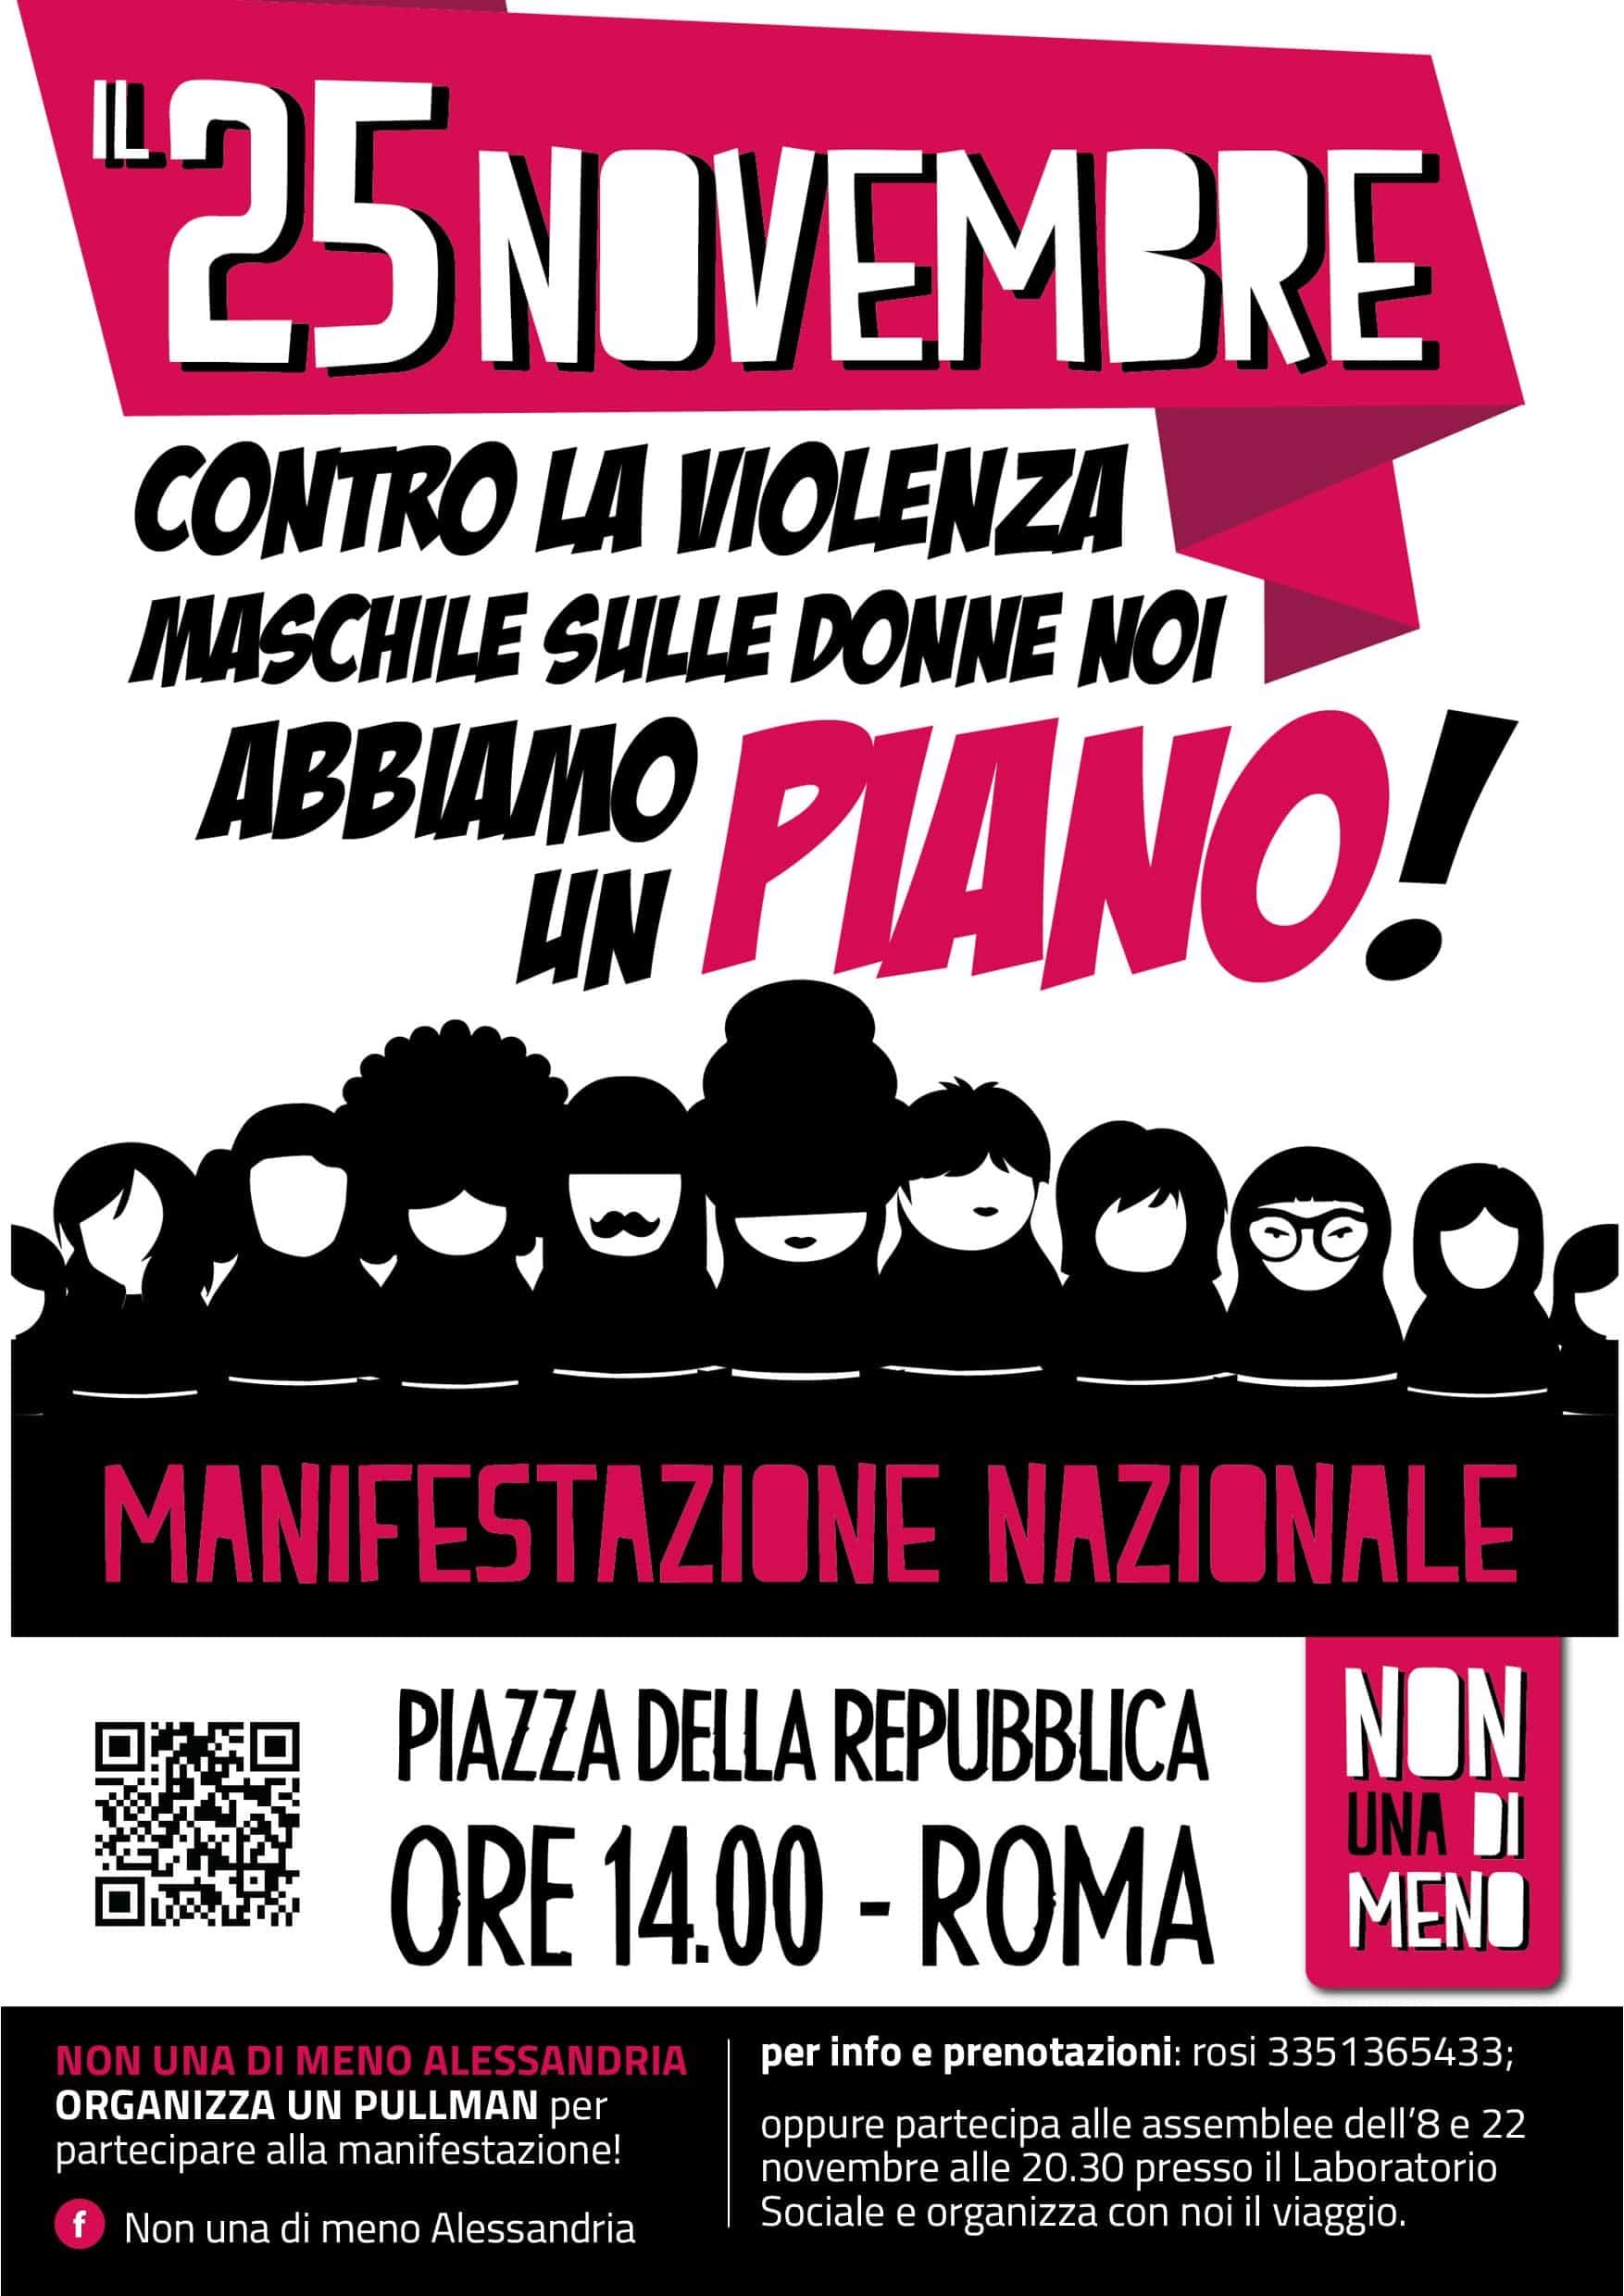 25-11-17-manifestazione-nazionale-a-roma-abbiamo-un-piano